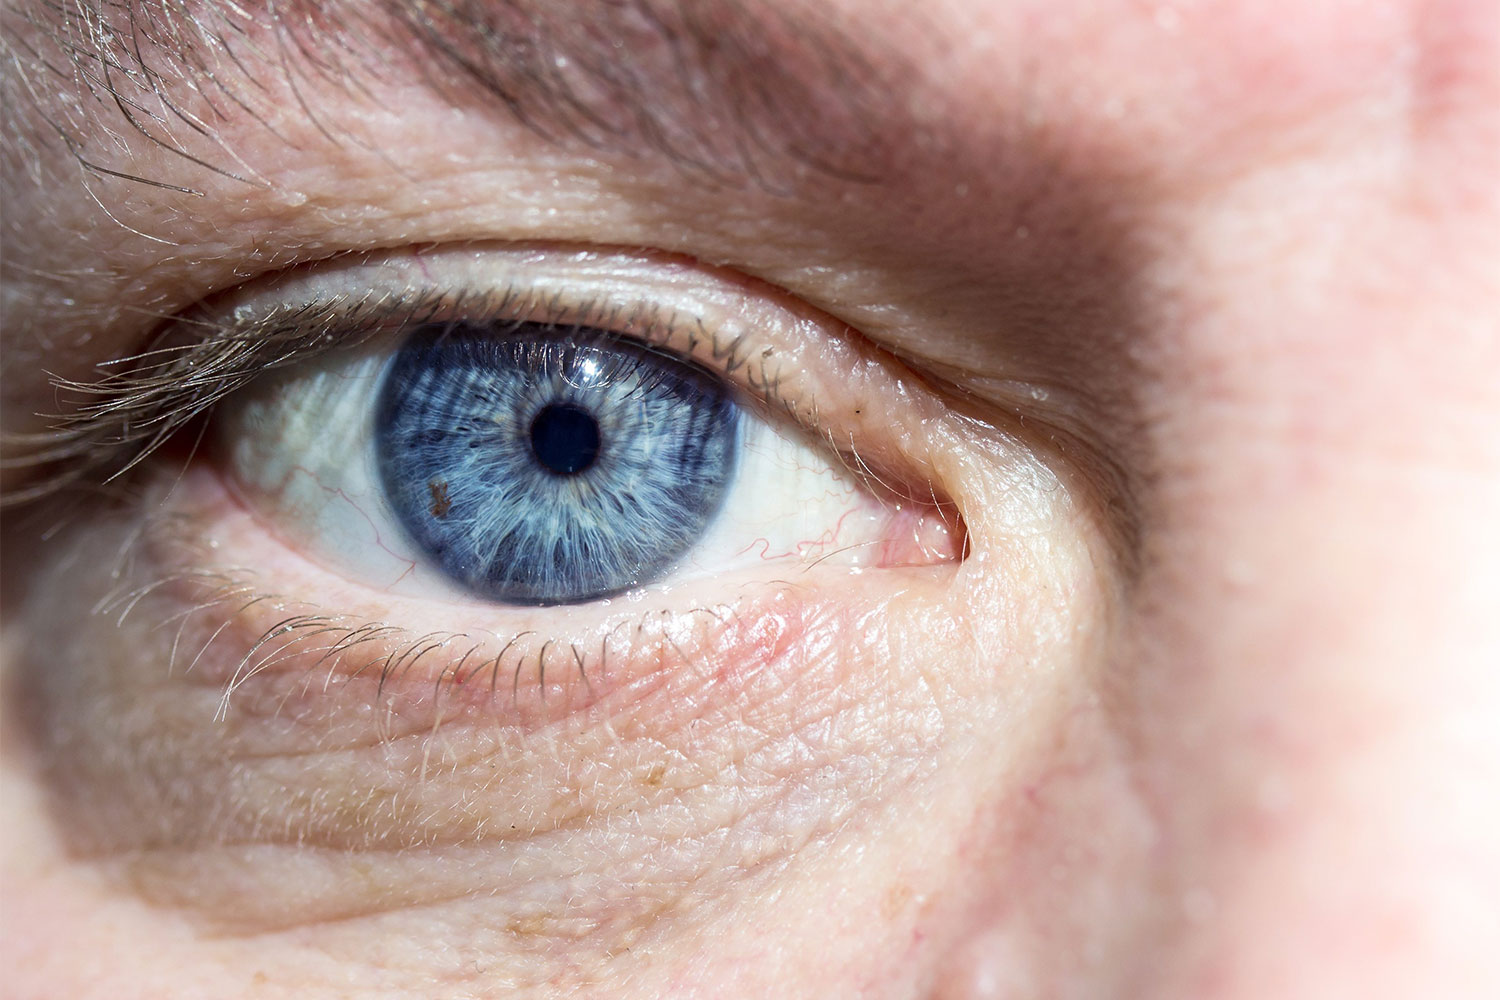 oftalmologie: sindrom de ochi uscat restaurarea vederii Kovalev